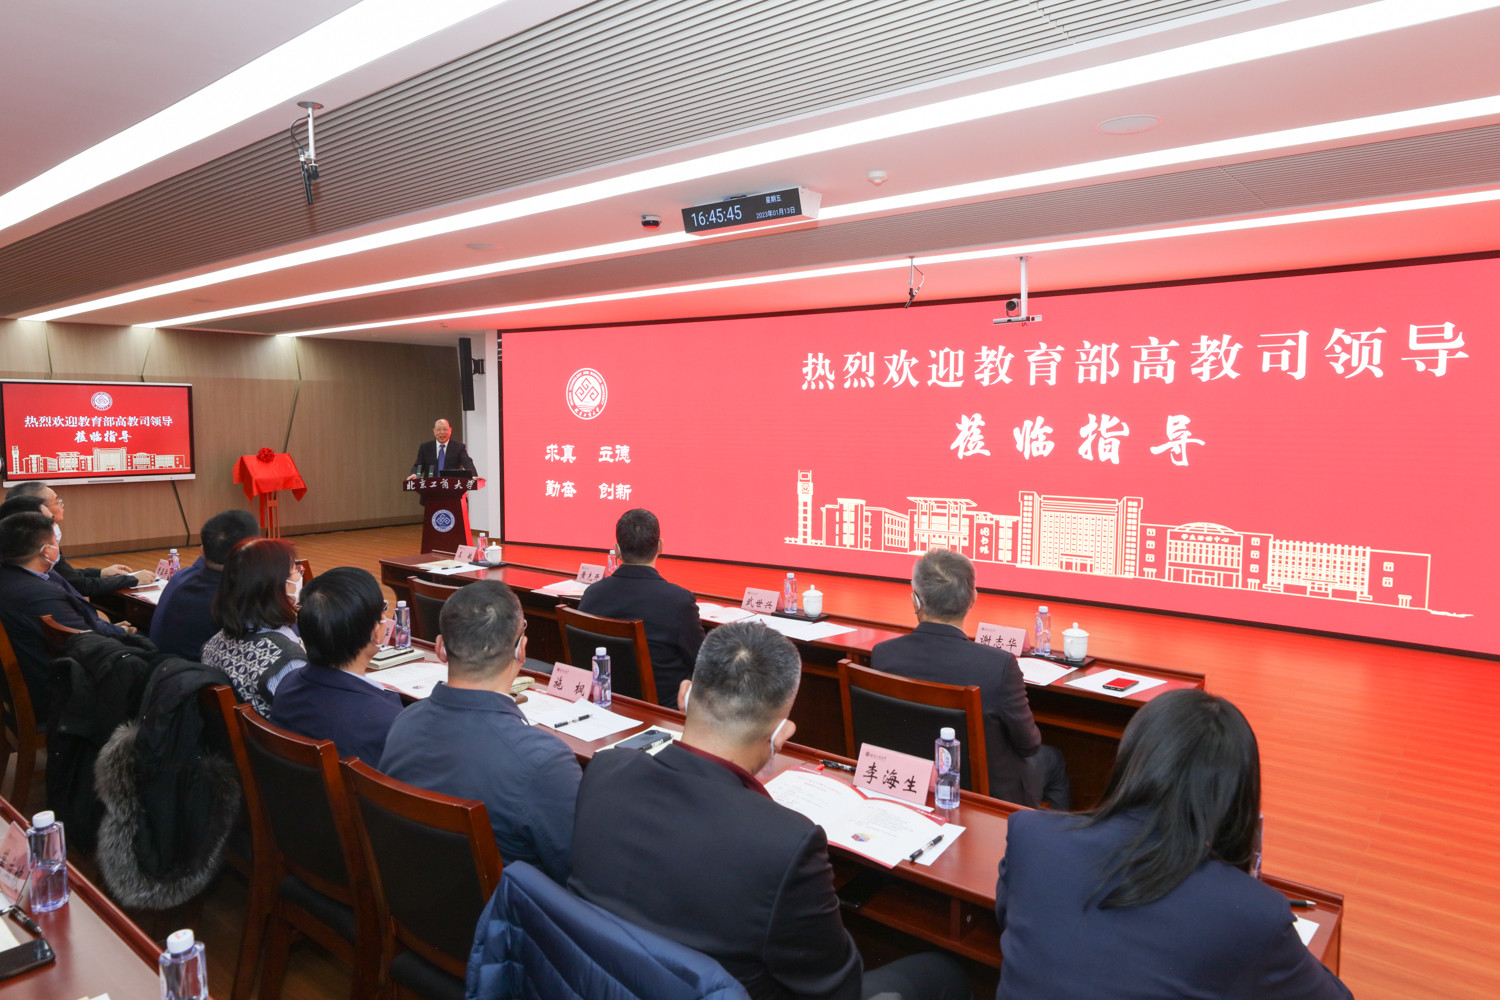 打通校园数字动脉, 北京工商大学成立数字未来中心